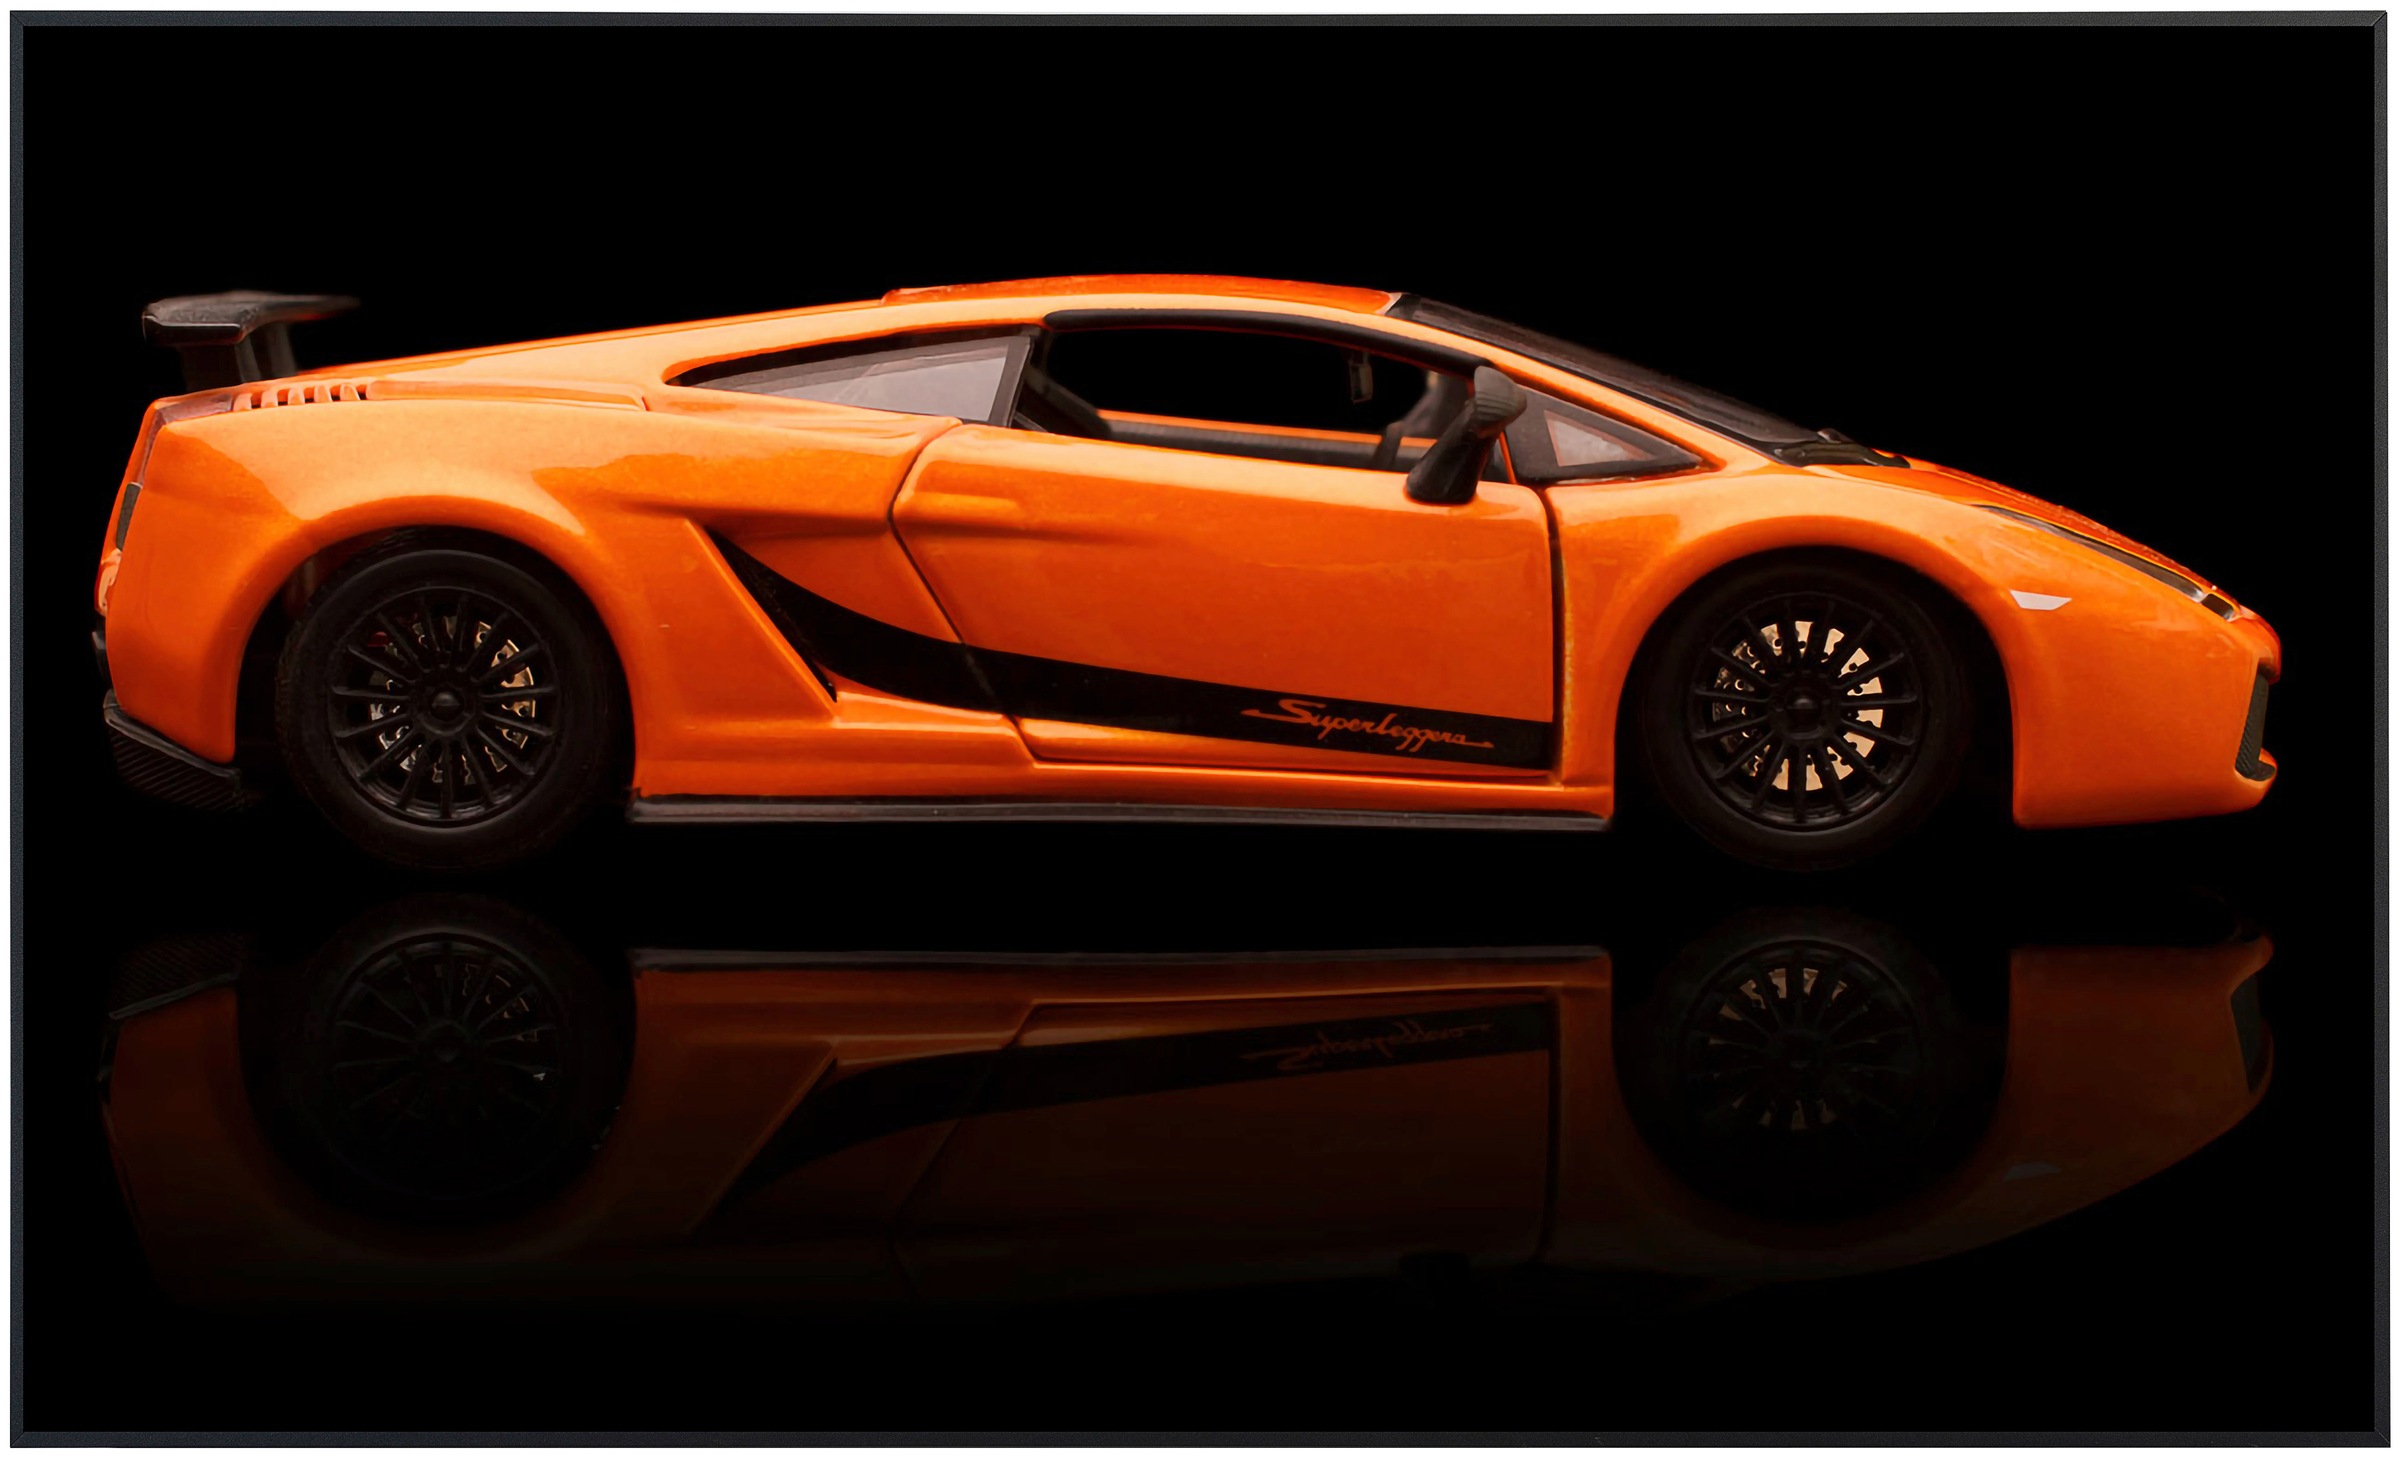 Papermoon Infrarotheizung »Auto orange«, sehr angenehme Strahlungswärme günstig online kaufen